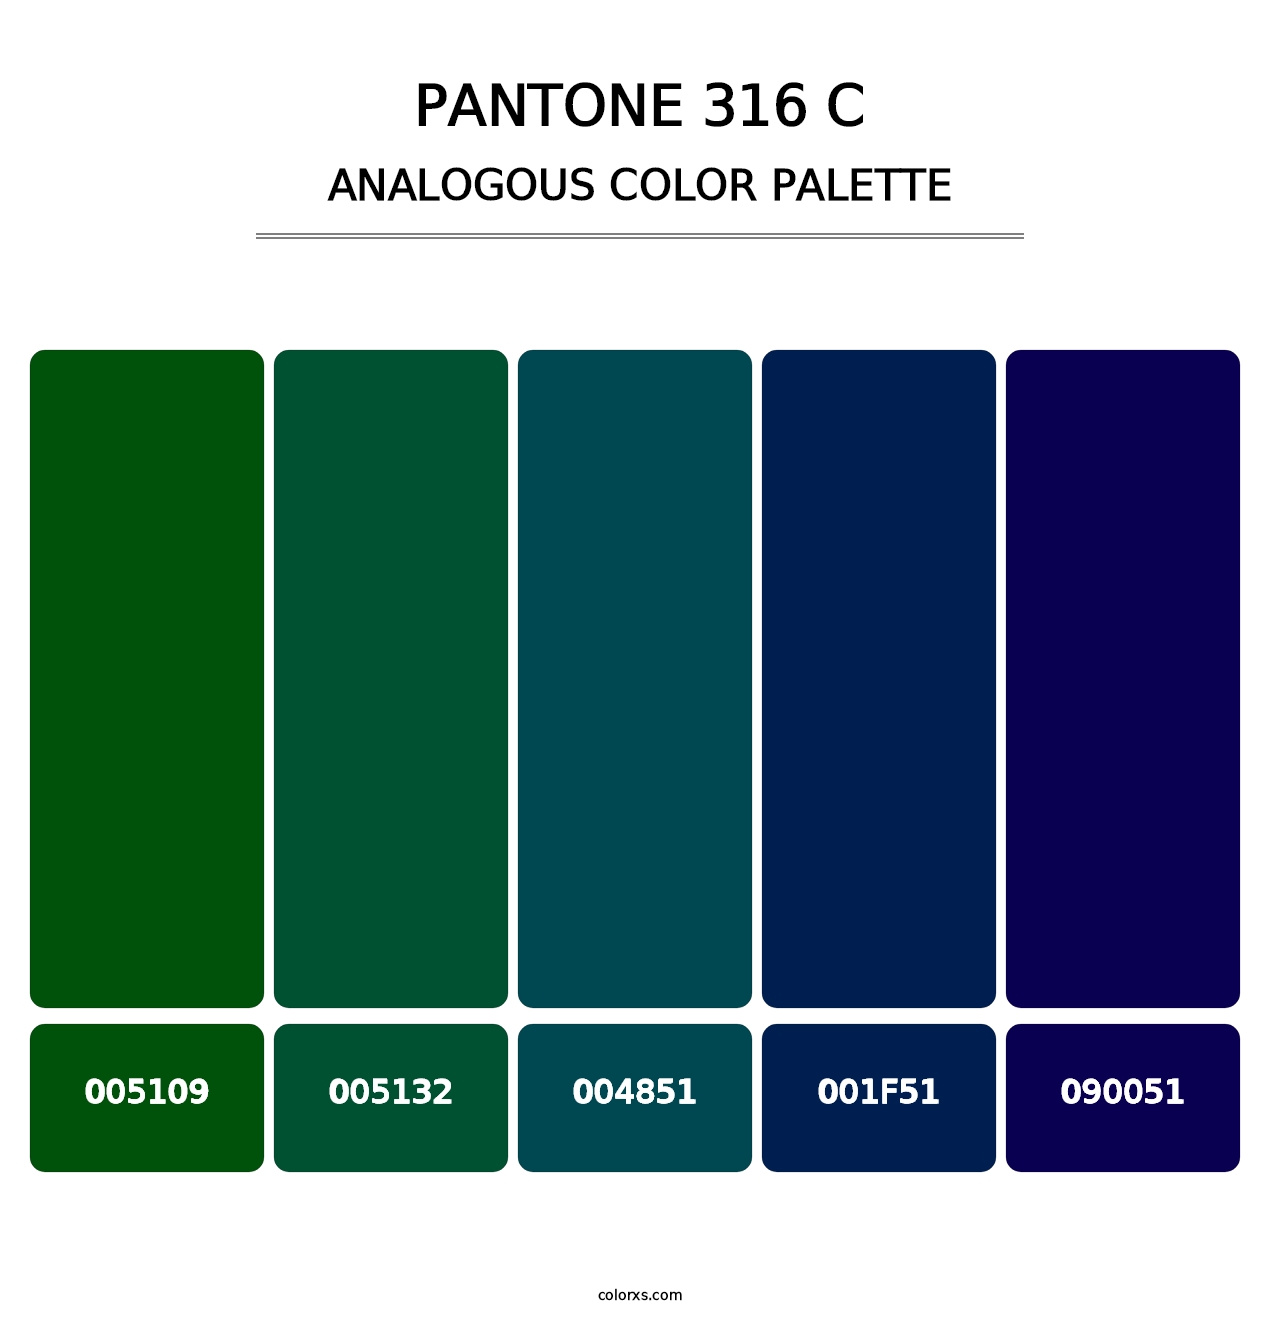 PANTONE 316 C - Analogous Color Palette